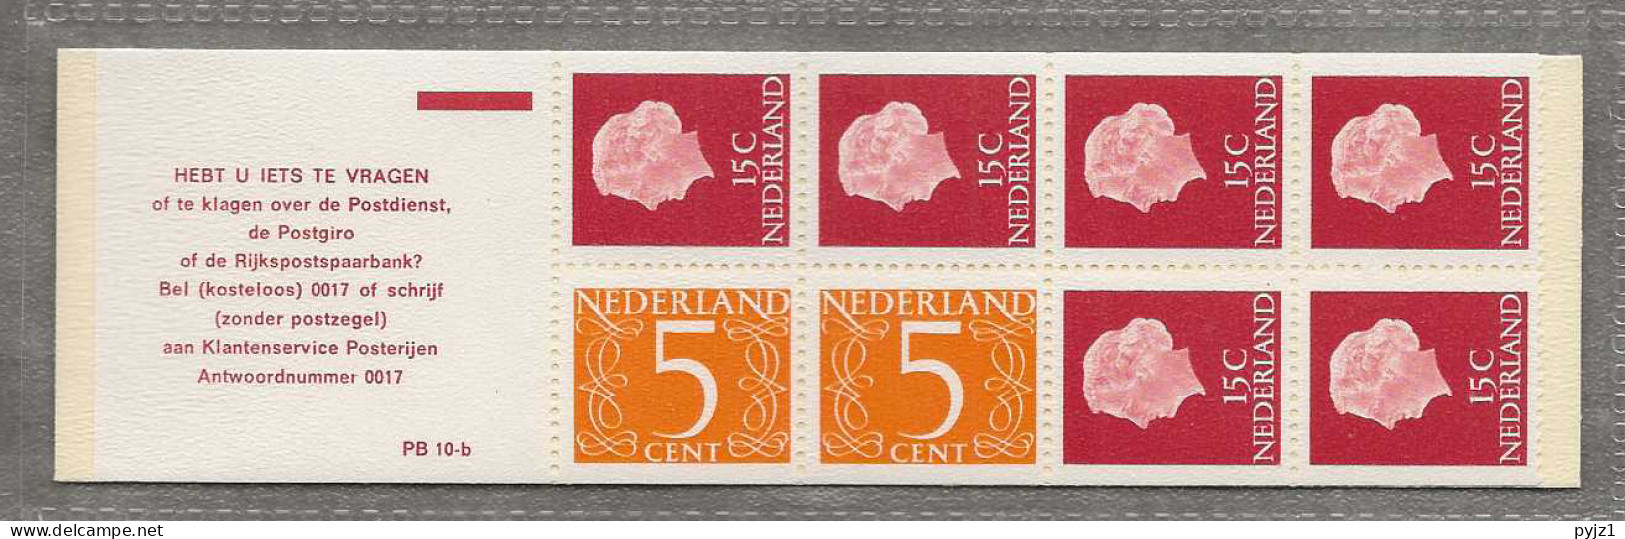 1971 MNH Nederland NVPH PB 10bF - Booklets & Coils